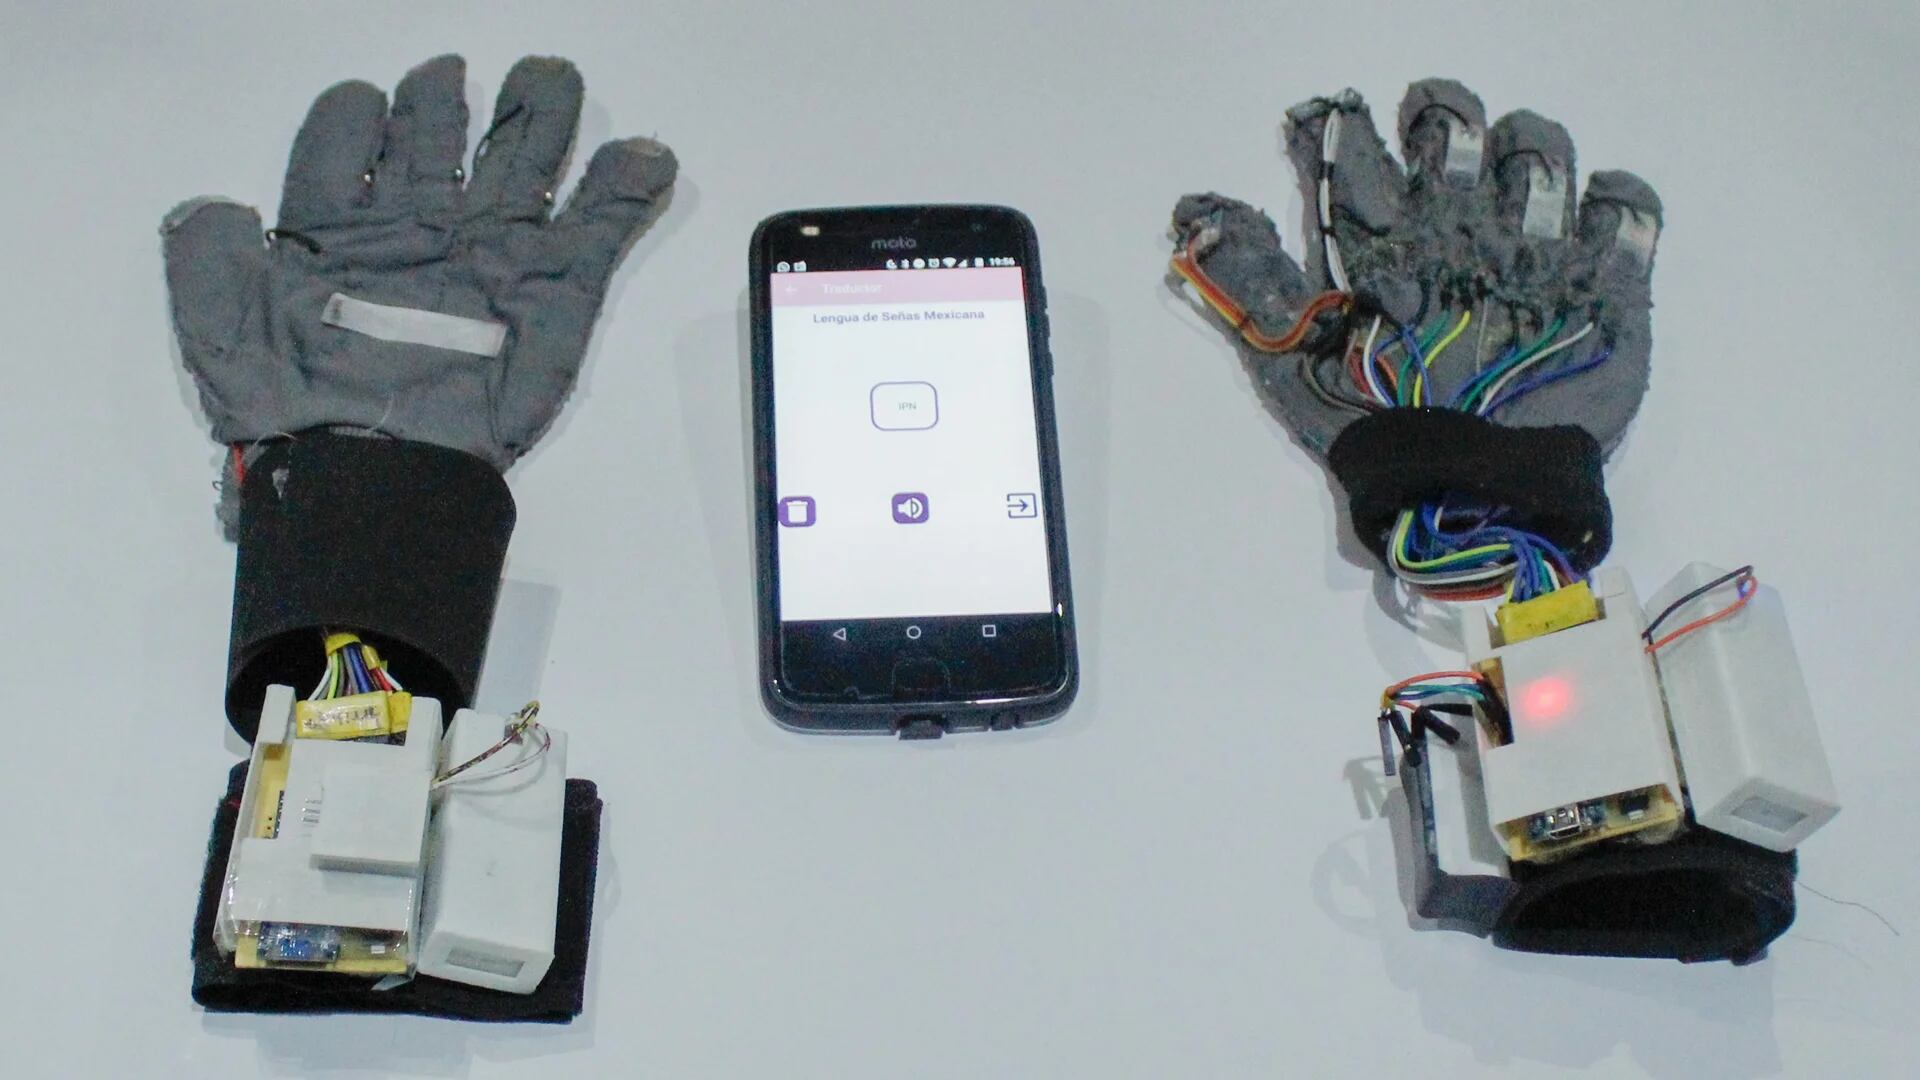 Egresadas del IPN inventaron guantes que traducen lenguaje de señas en un teléfono móvil